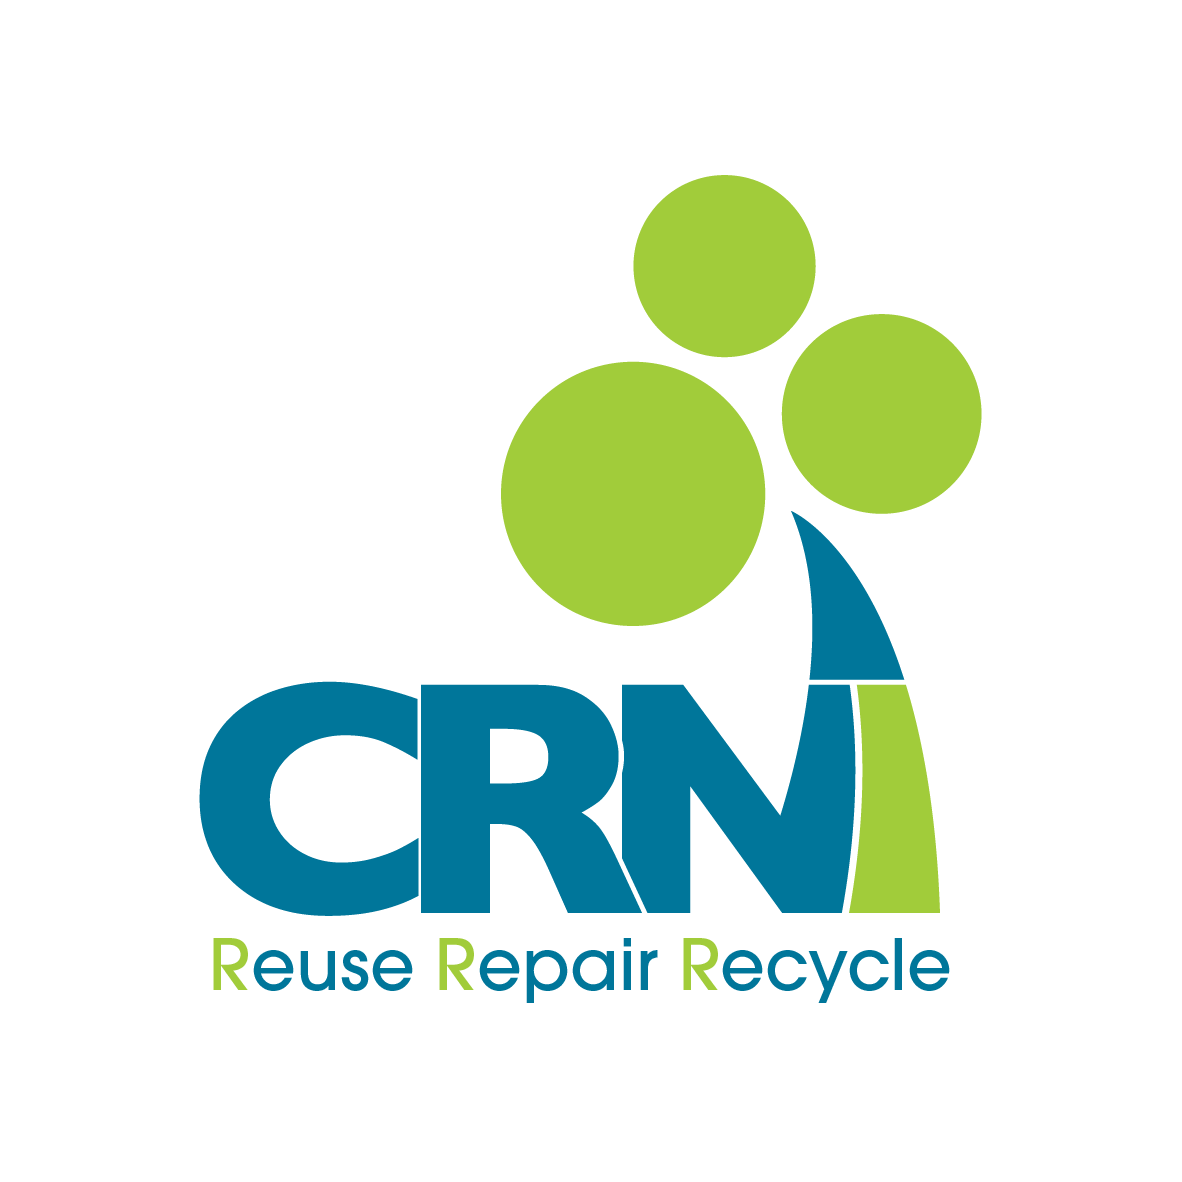 CRNI-New-logo-x-2-2020-01-e1581622311964